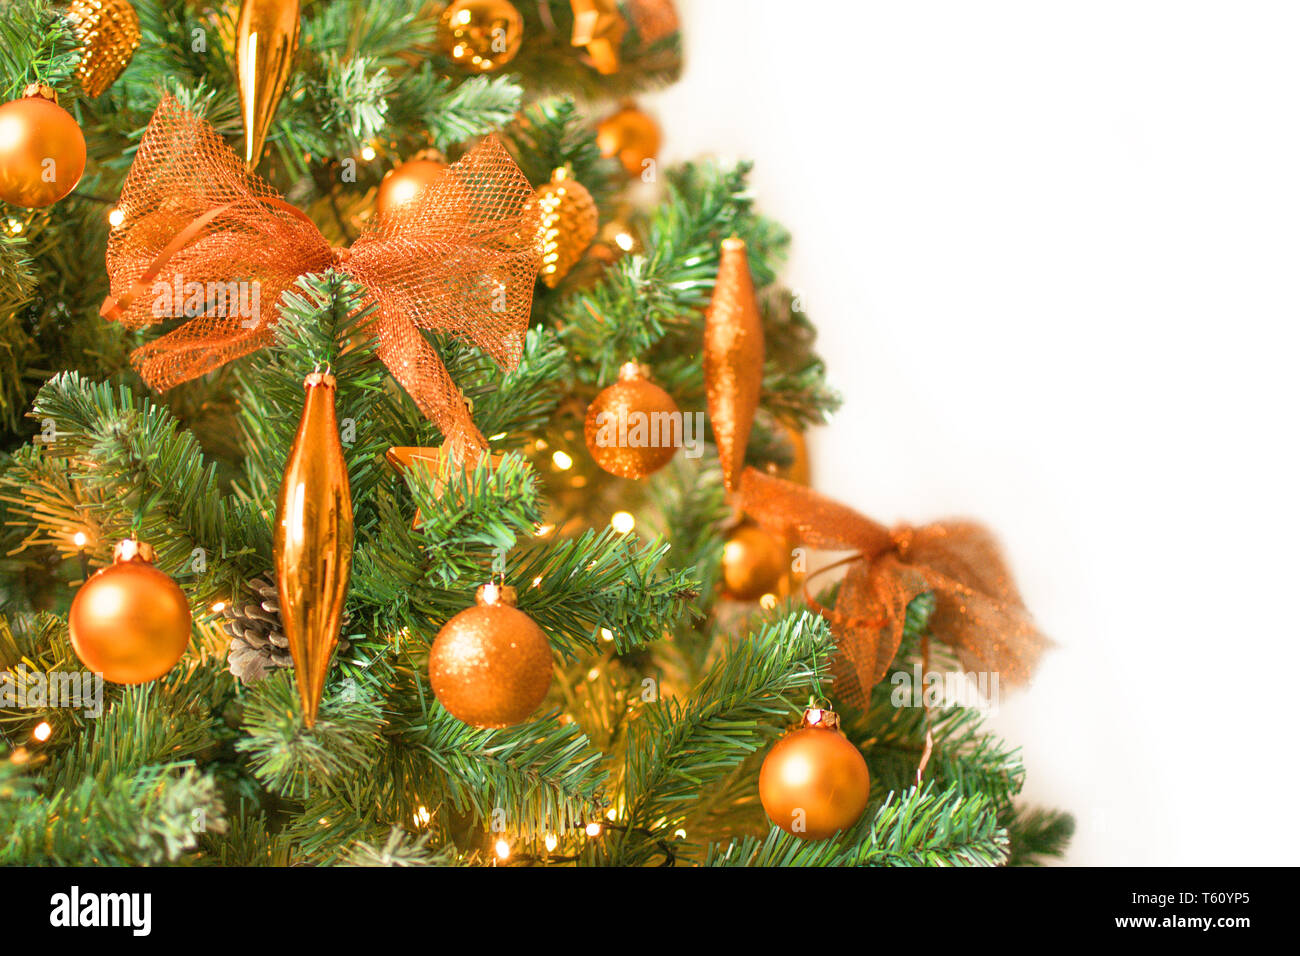 Dettaglio del moderno albero di Natale decorato con colore bronzo - ornamenti isolati su sfondo bianco sul lato sinistro Foto Stock